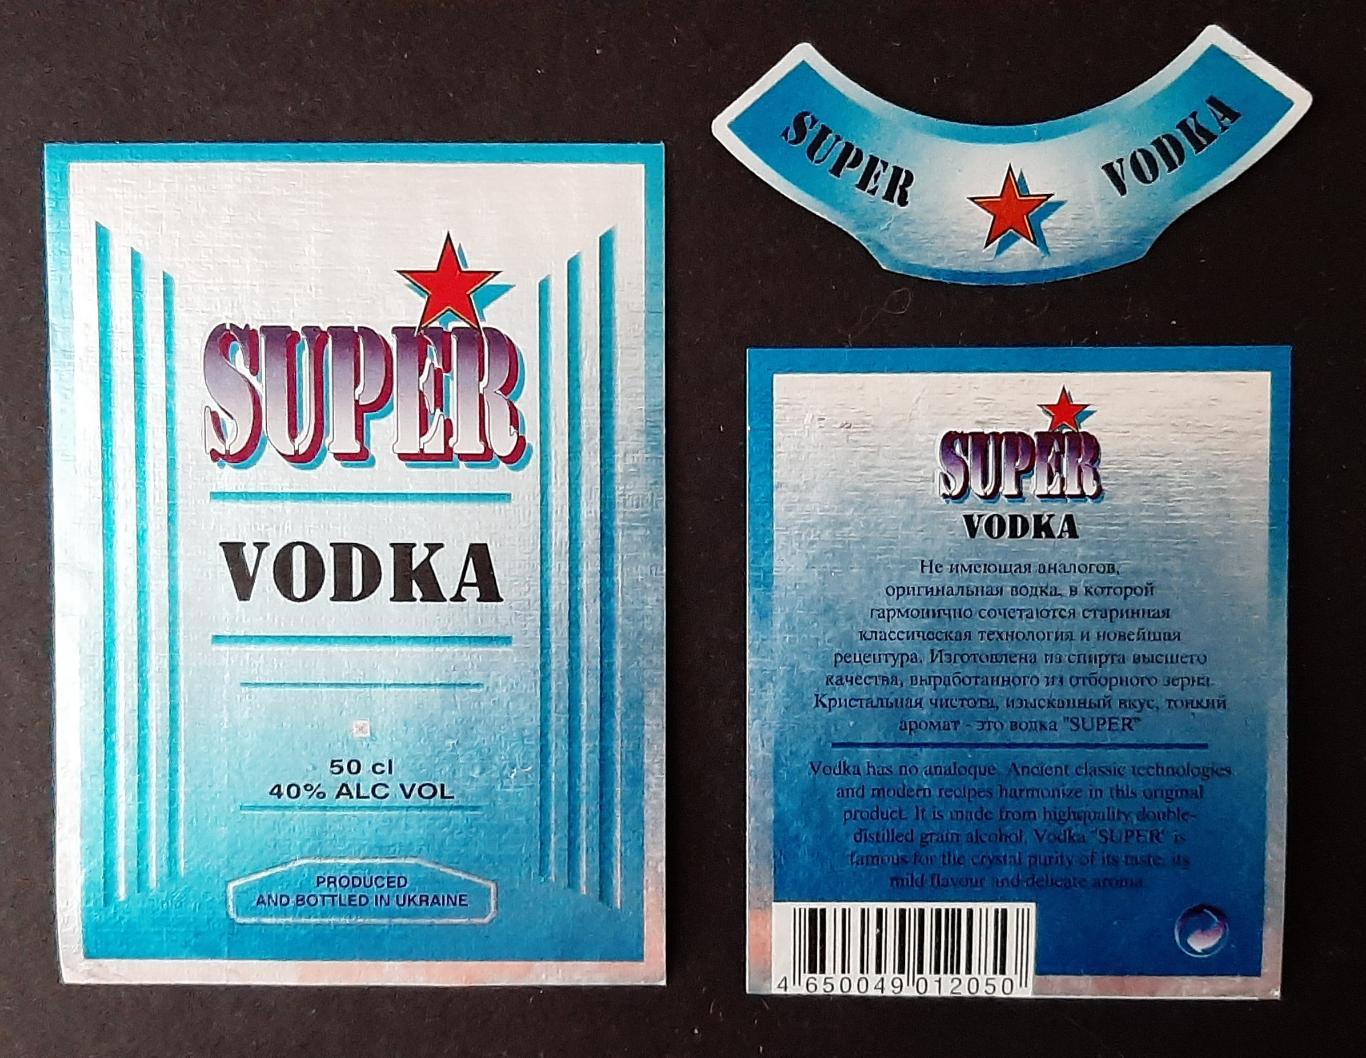 Етикетка Super vodka